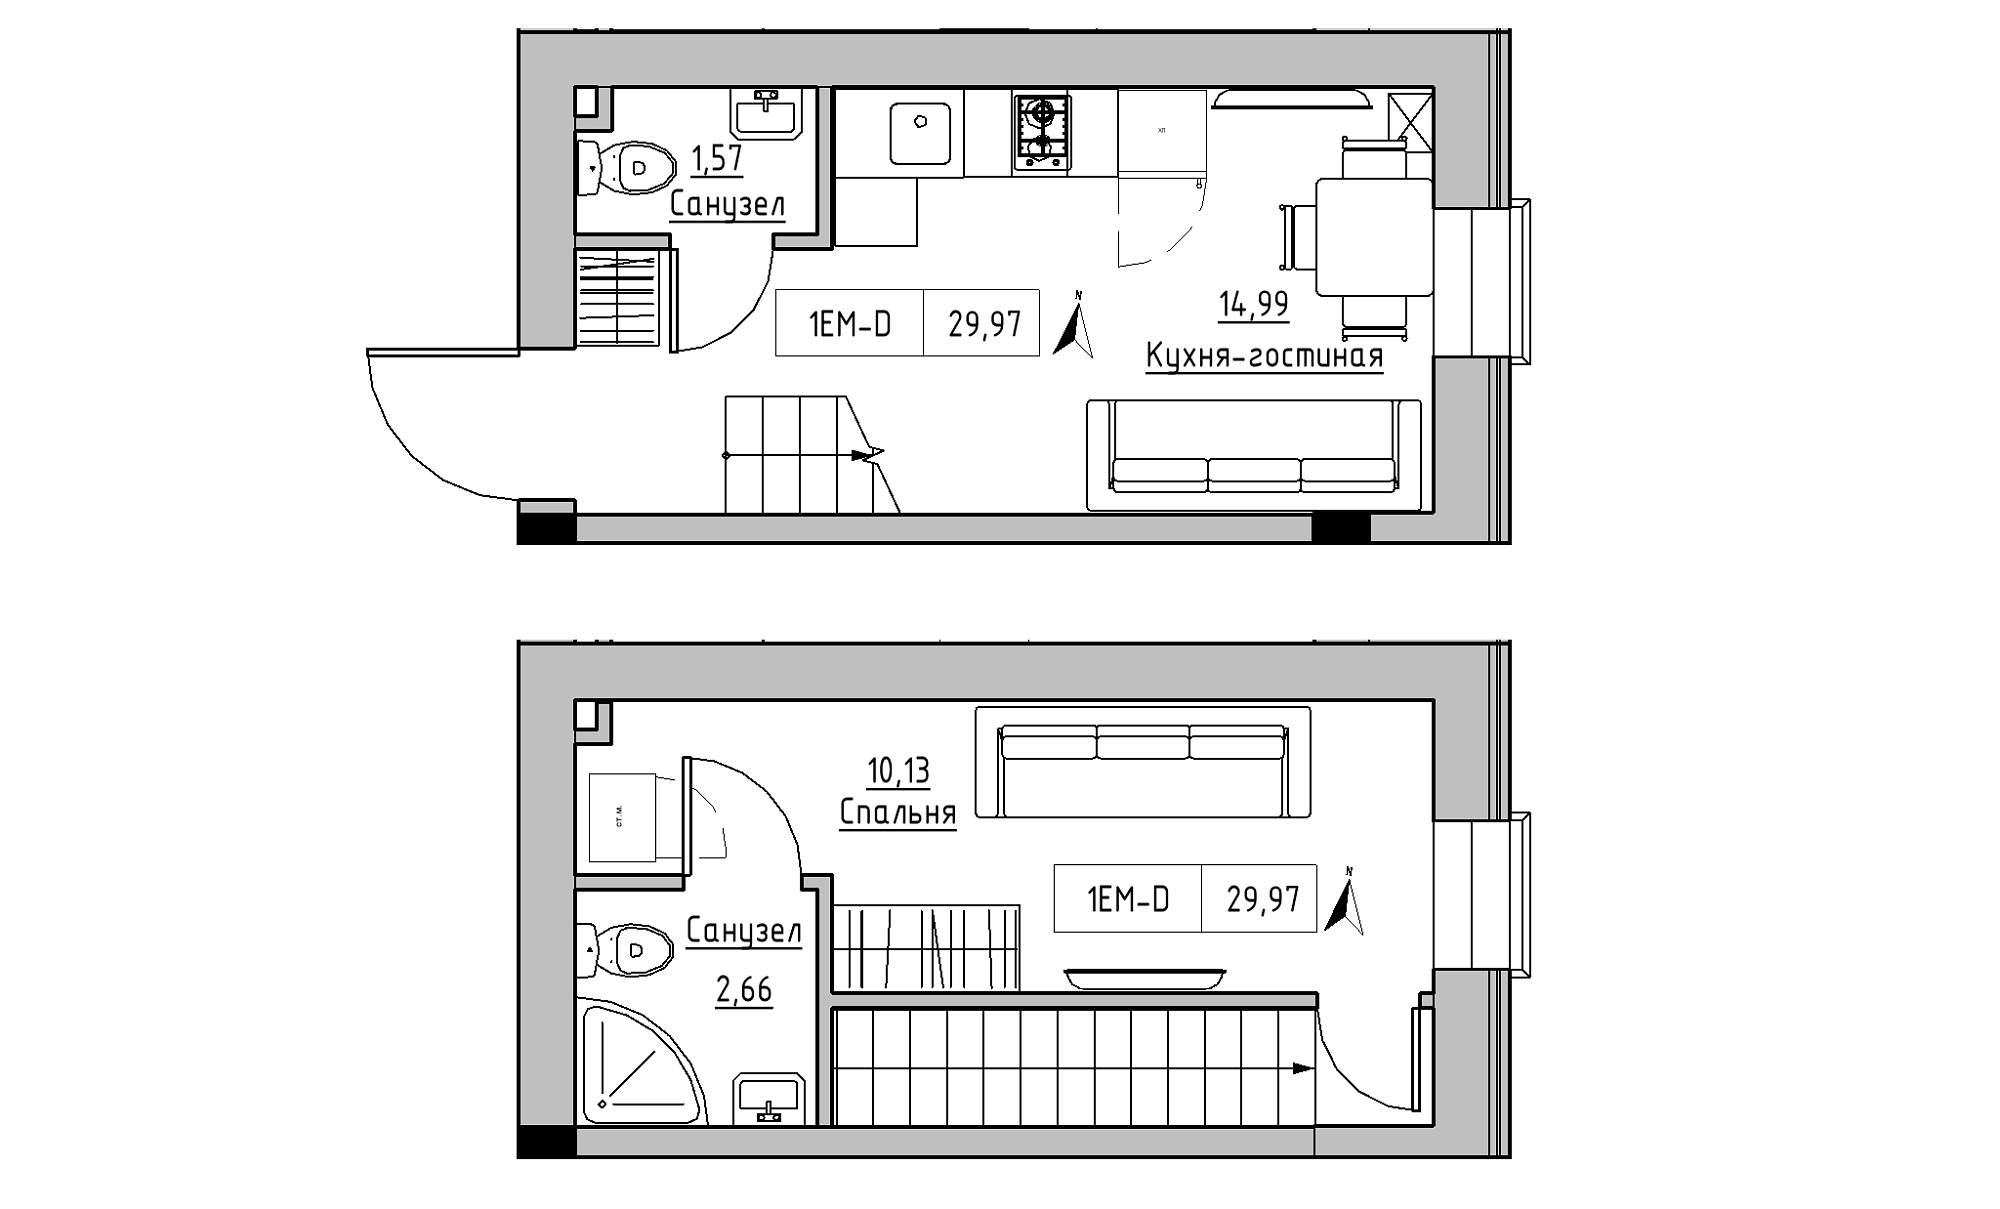 Planning 2-lvl flats area 29.97m2, KS-023-01/0005.